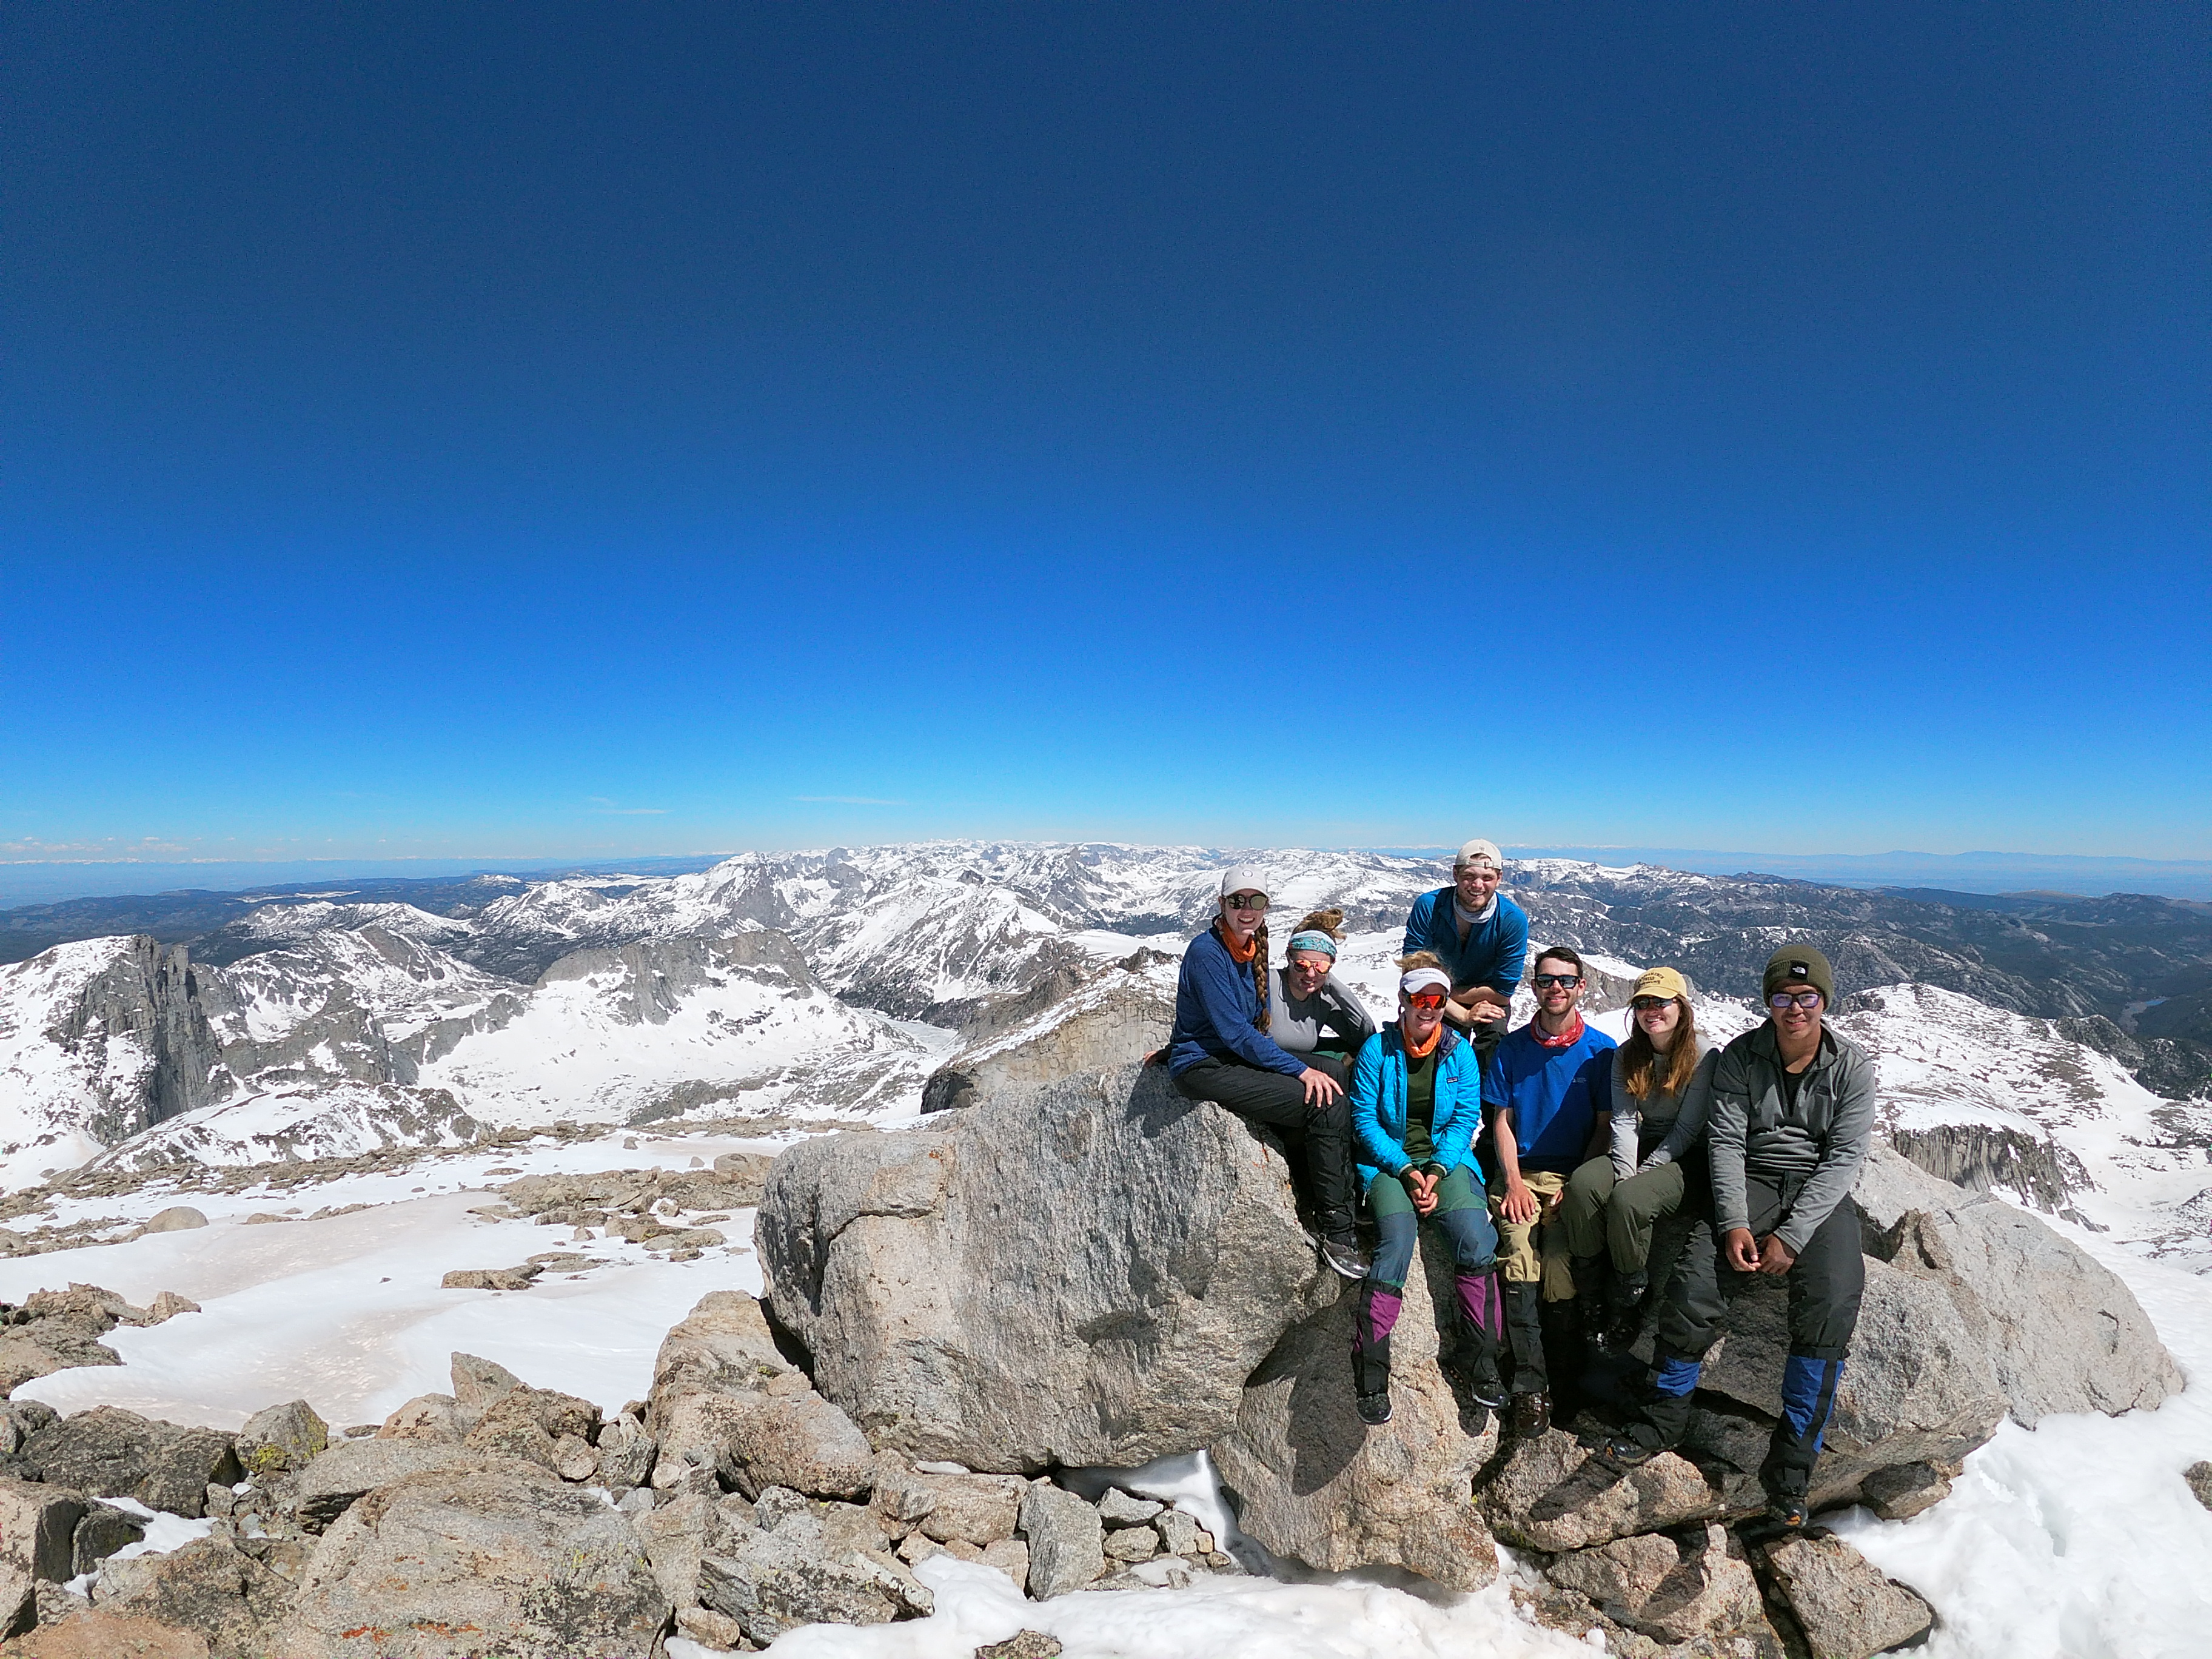 People on a mountain summit